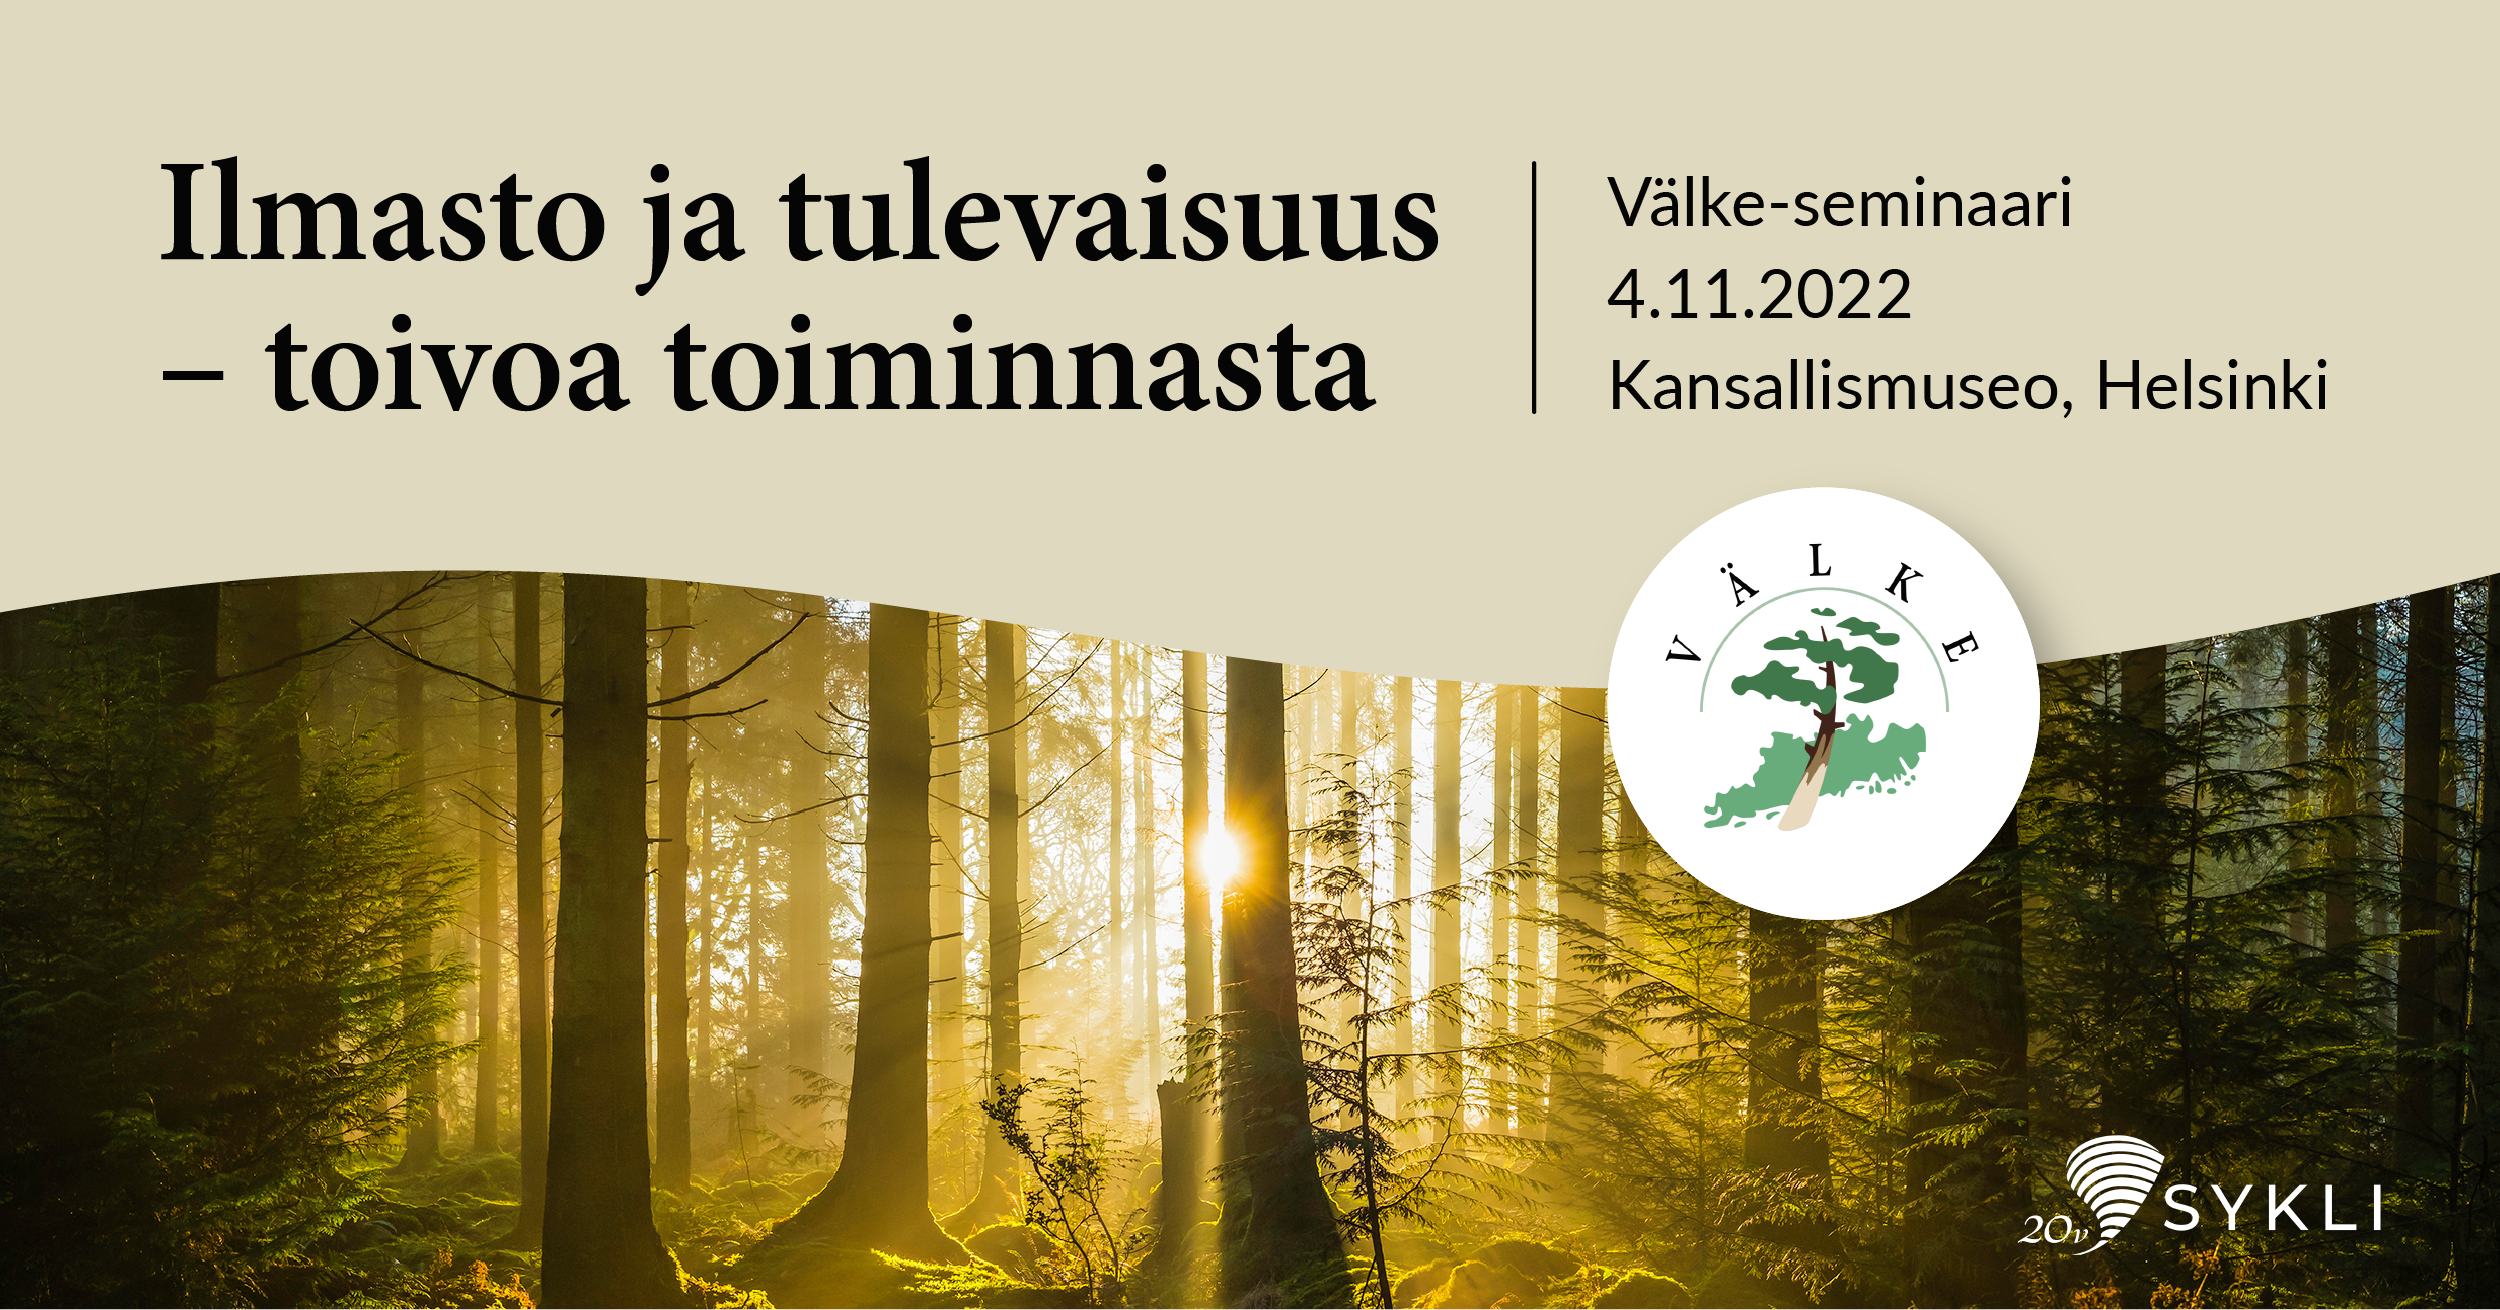 Ilmasto ja tulevaisuus - toivoa toiminnasta Välke-seminaari 4.11.2022 Kansallismuseo, Helsinki